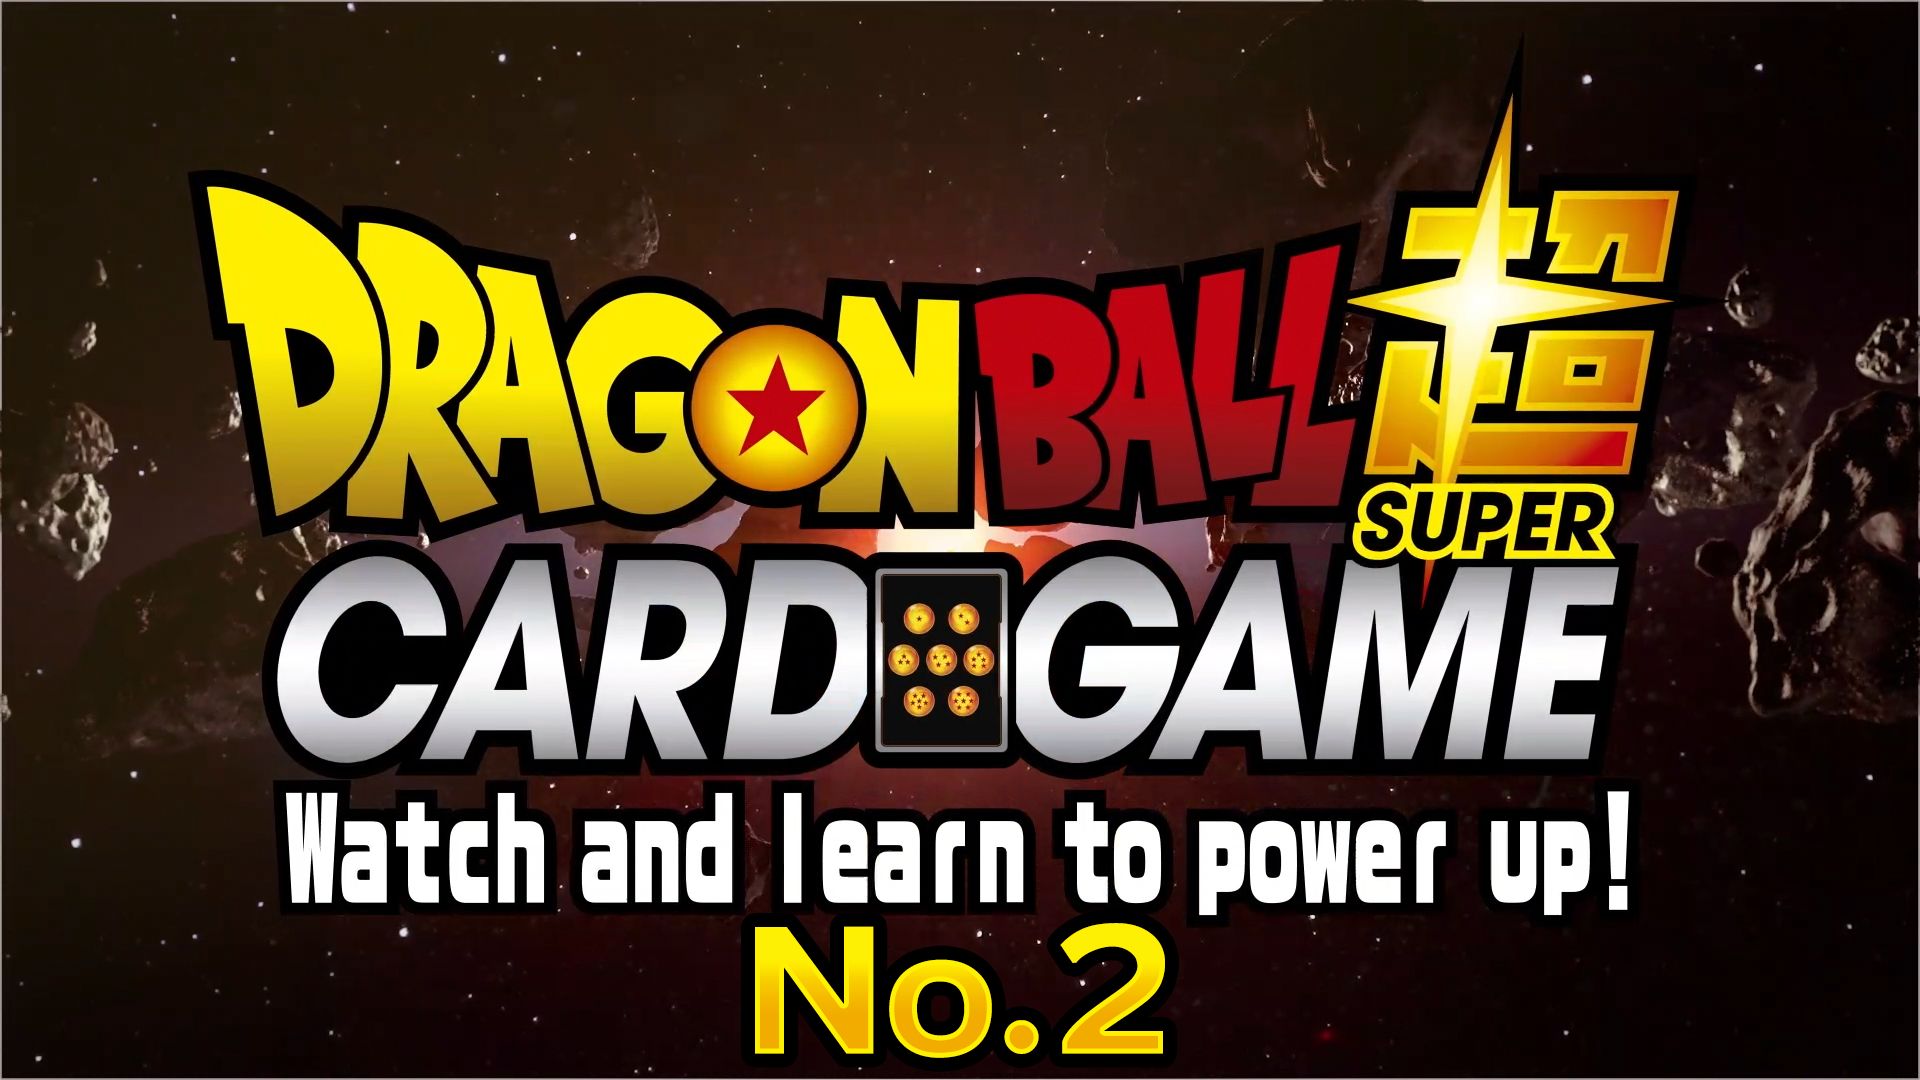 ドラゴンボール超カードゲーム Watch and learn to power up！ No.2